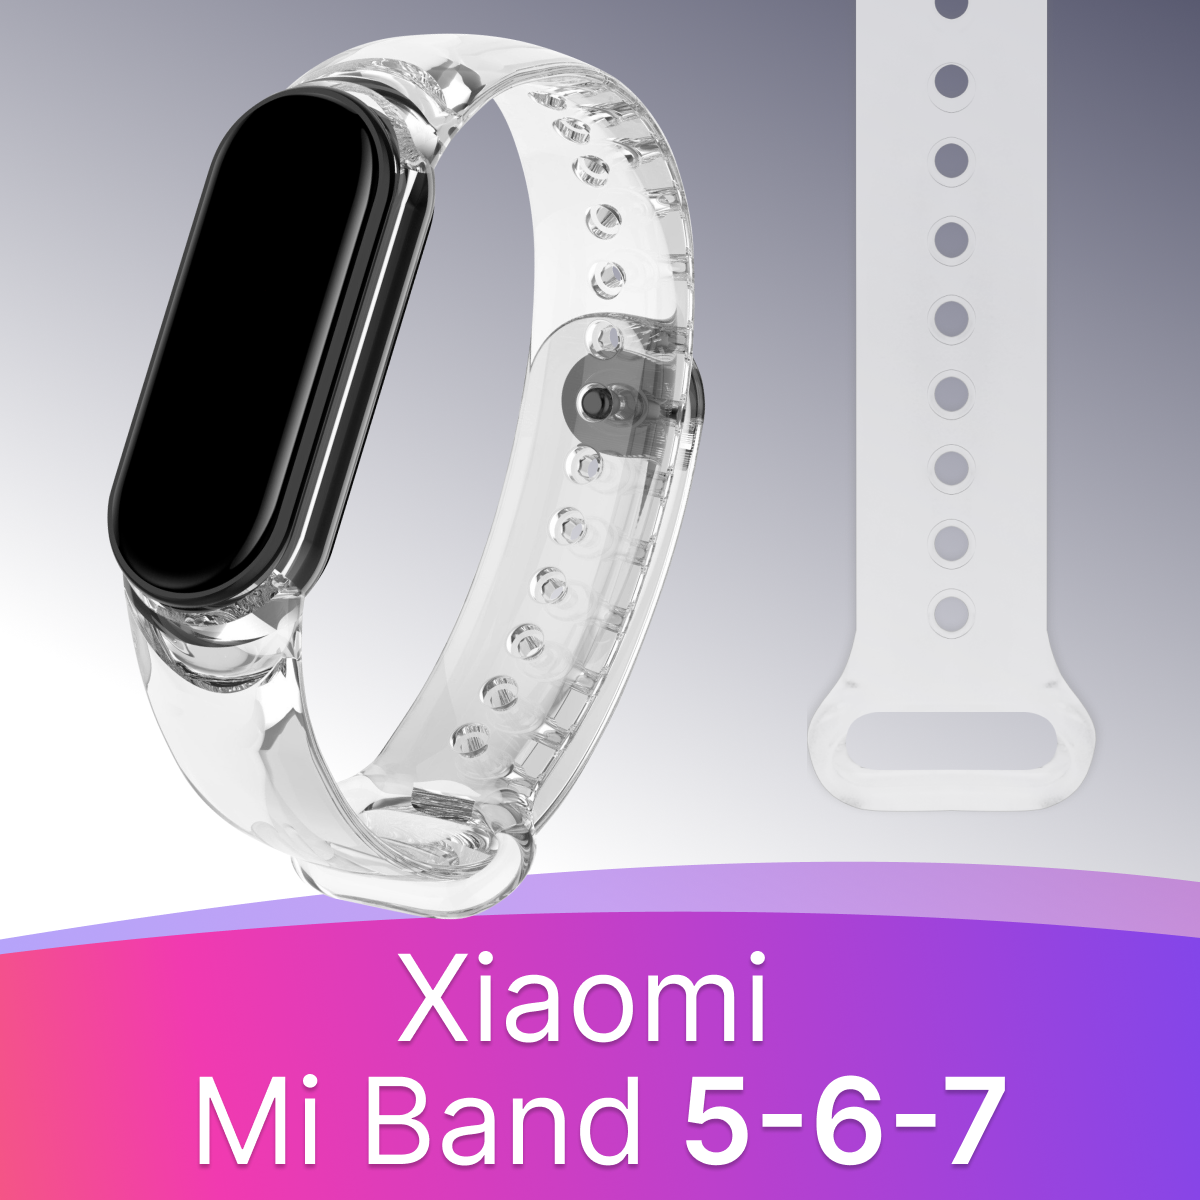 Прозрачный силиконовый ремешок для фитнес-трекера Xiaomi Mi Band 5,6,7 liquid / Спортивный браслет на смарт часы Сяоми Ми Бэнд 5,6,7 (Прозрачный)